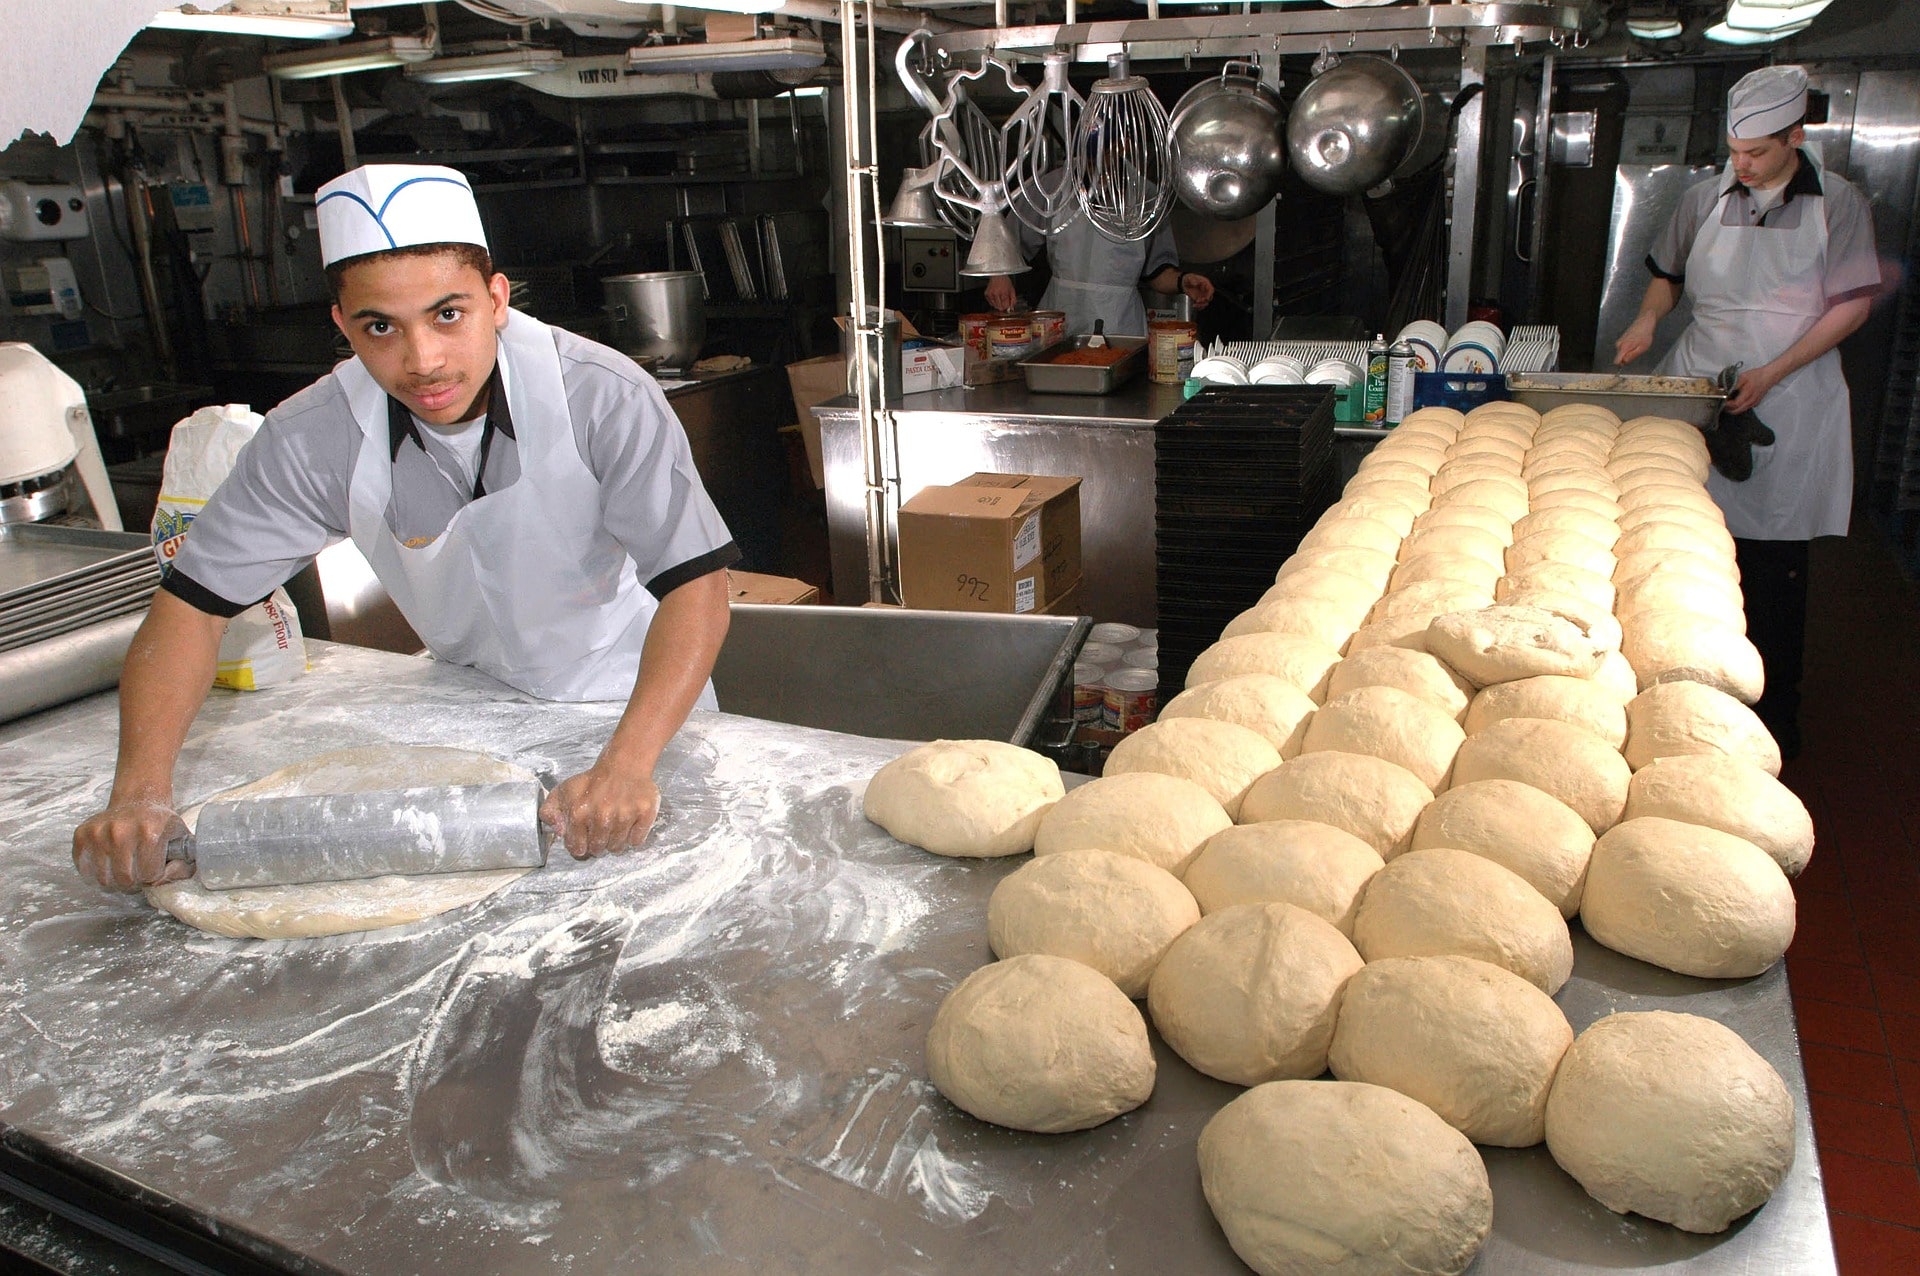 في صورة عمال مخبز في مكان عملهم